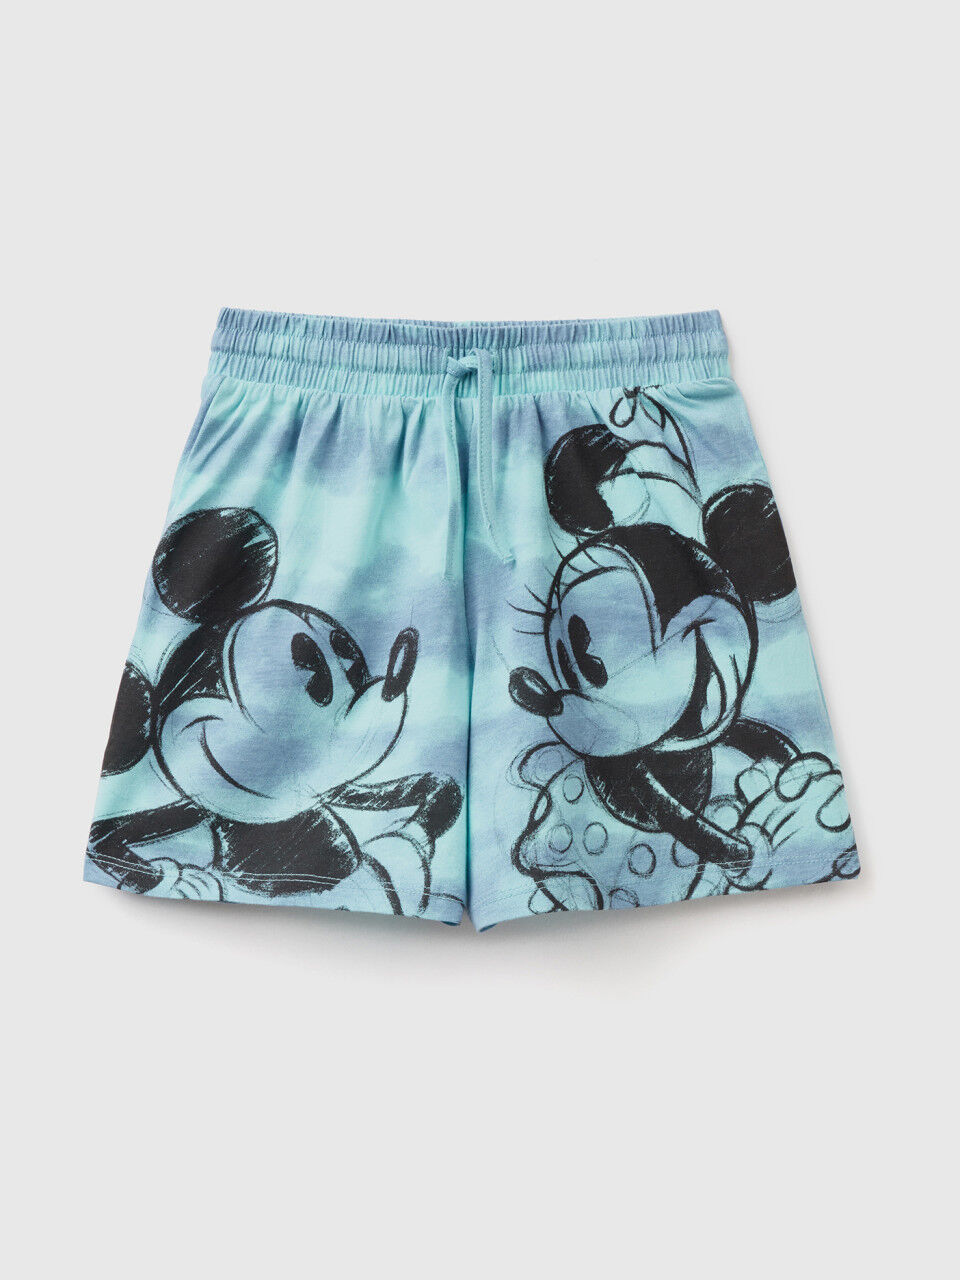 Pantalón corto tie-dye con estampado de Disney